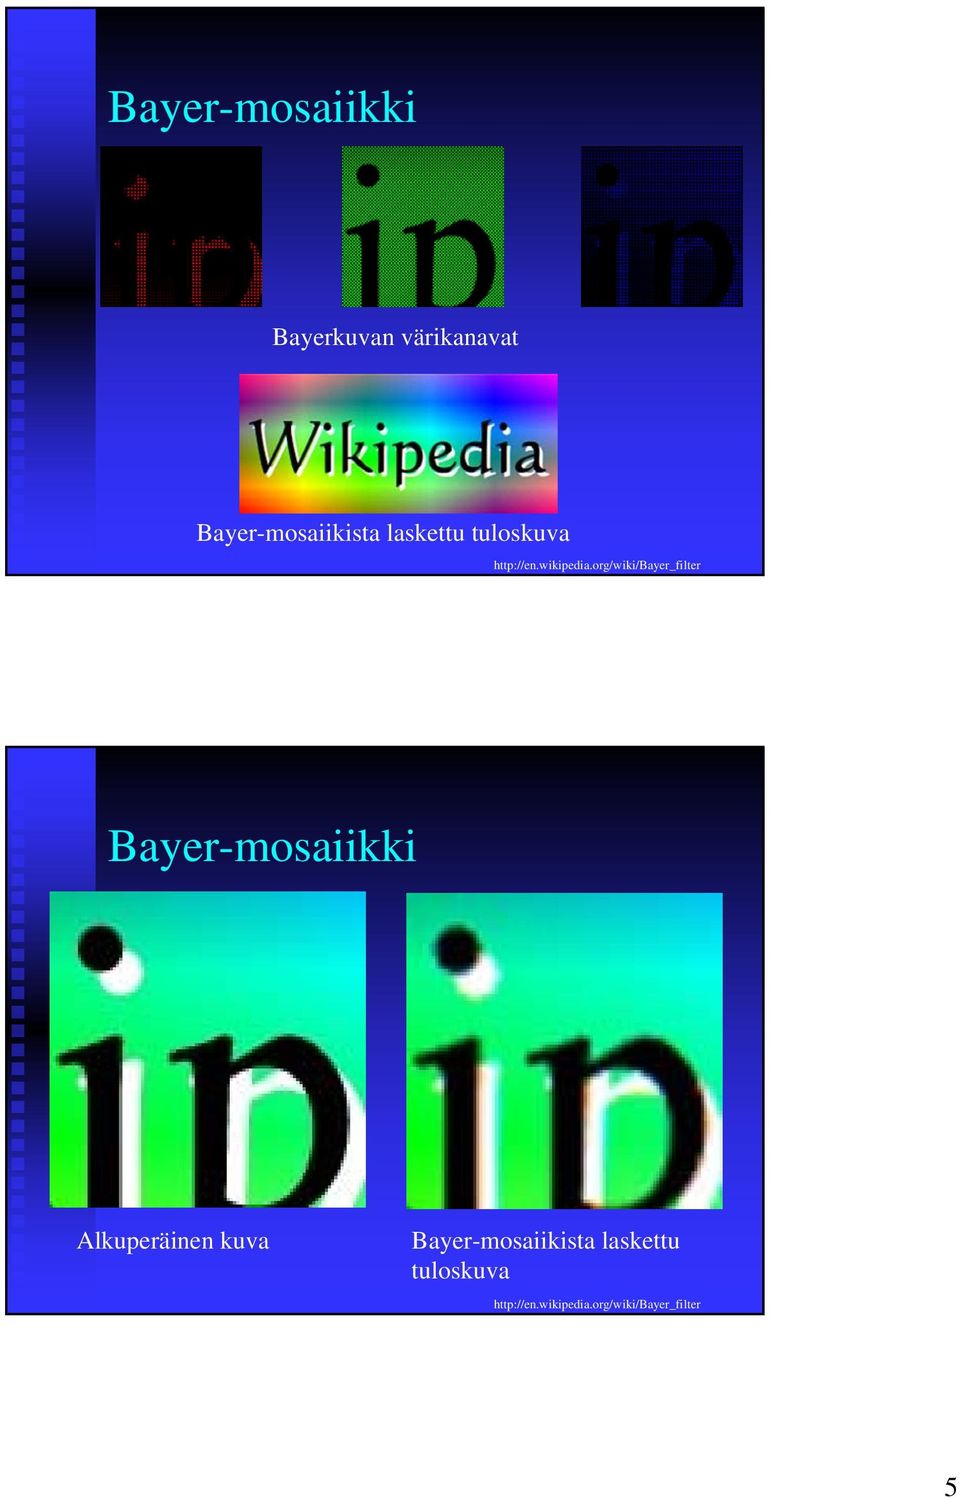 org/wiki/bayer_filter Bayer-mosaiikki Alkuperäinen kuva